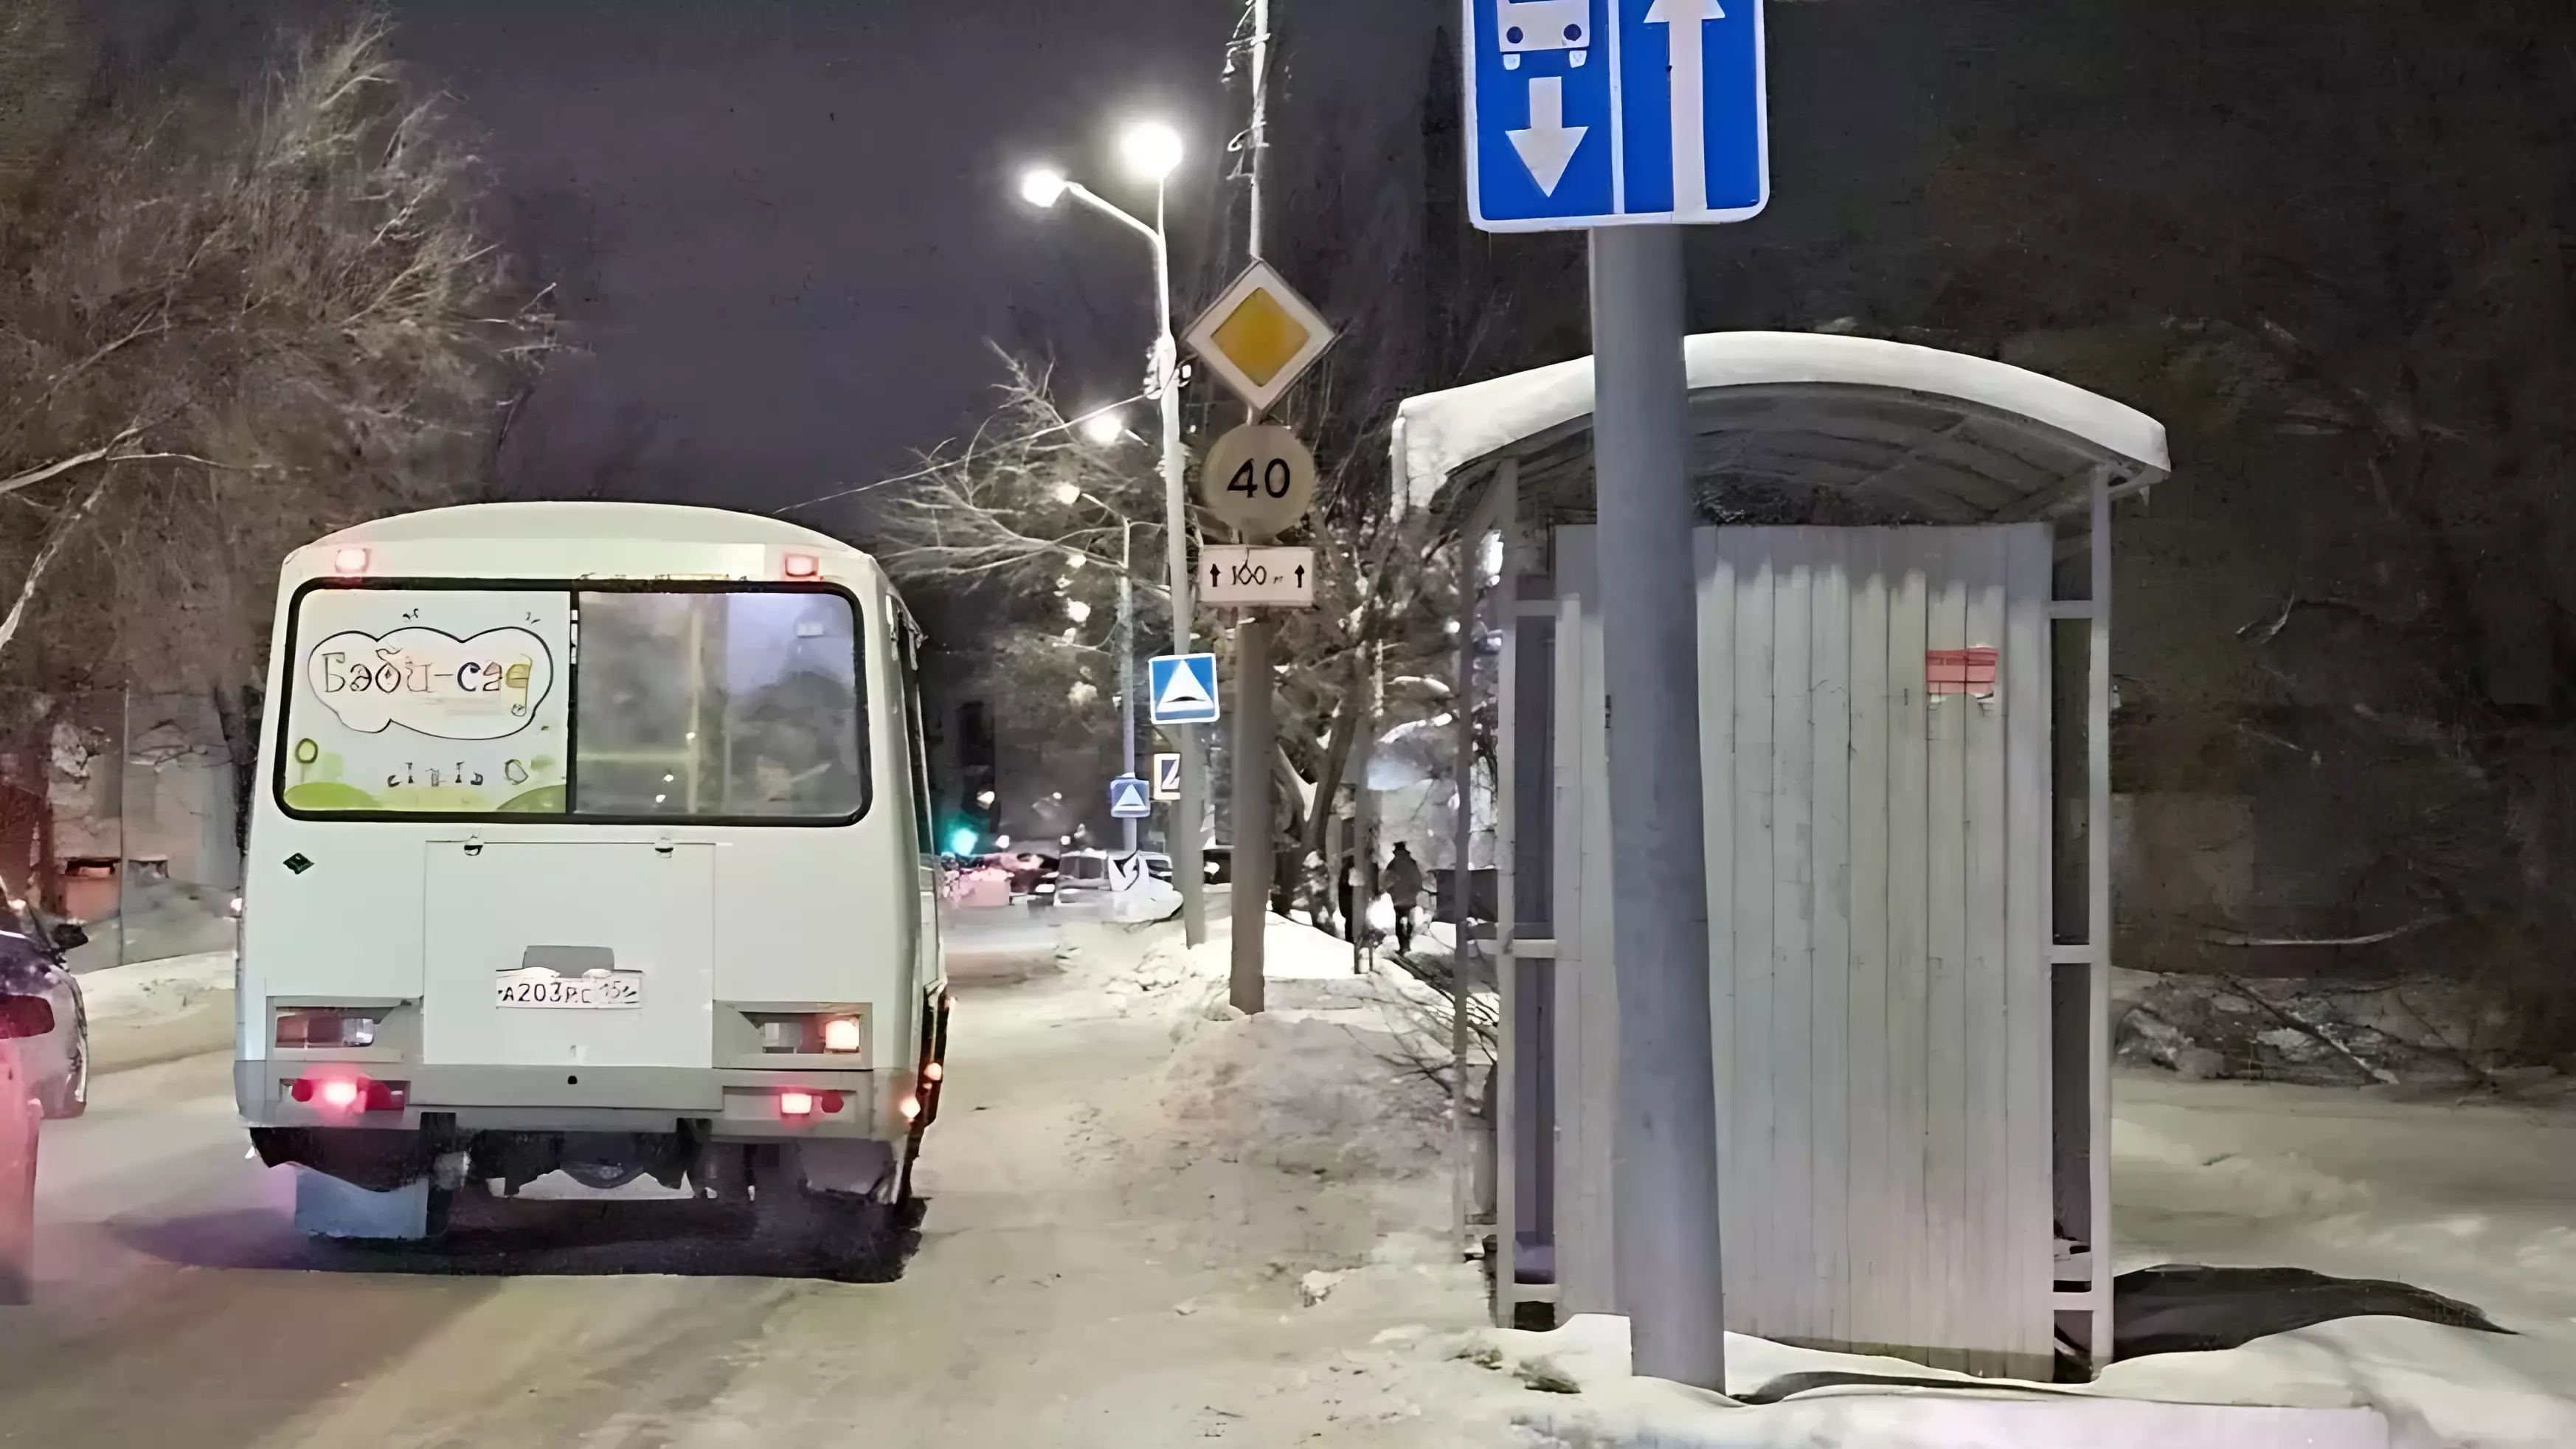 Мэрия Оренбурга обещает разместить схемы маршрутов автобусов на остановках — когда?